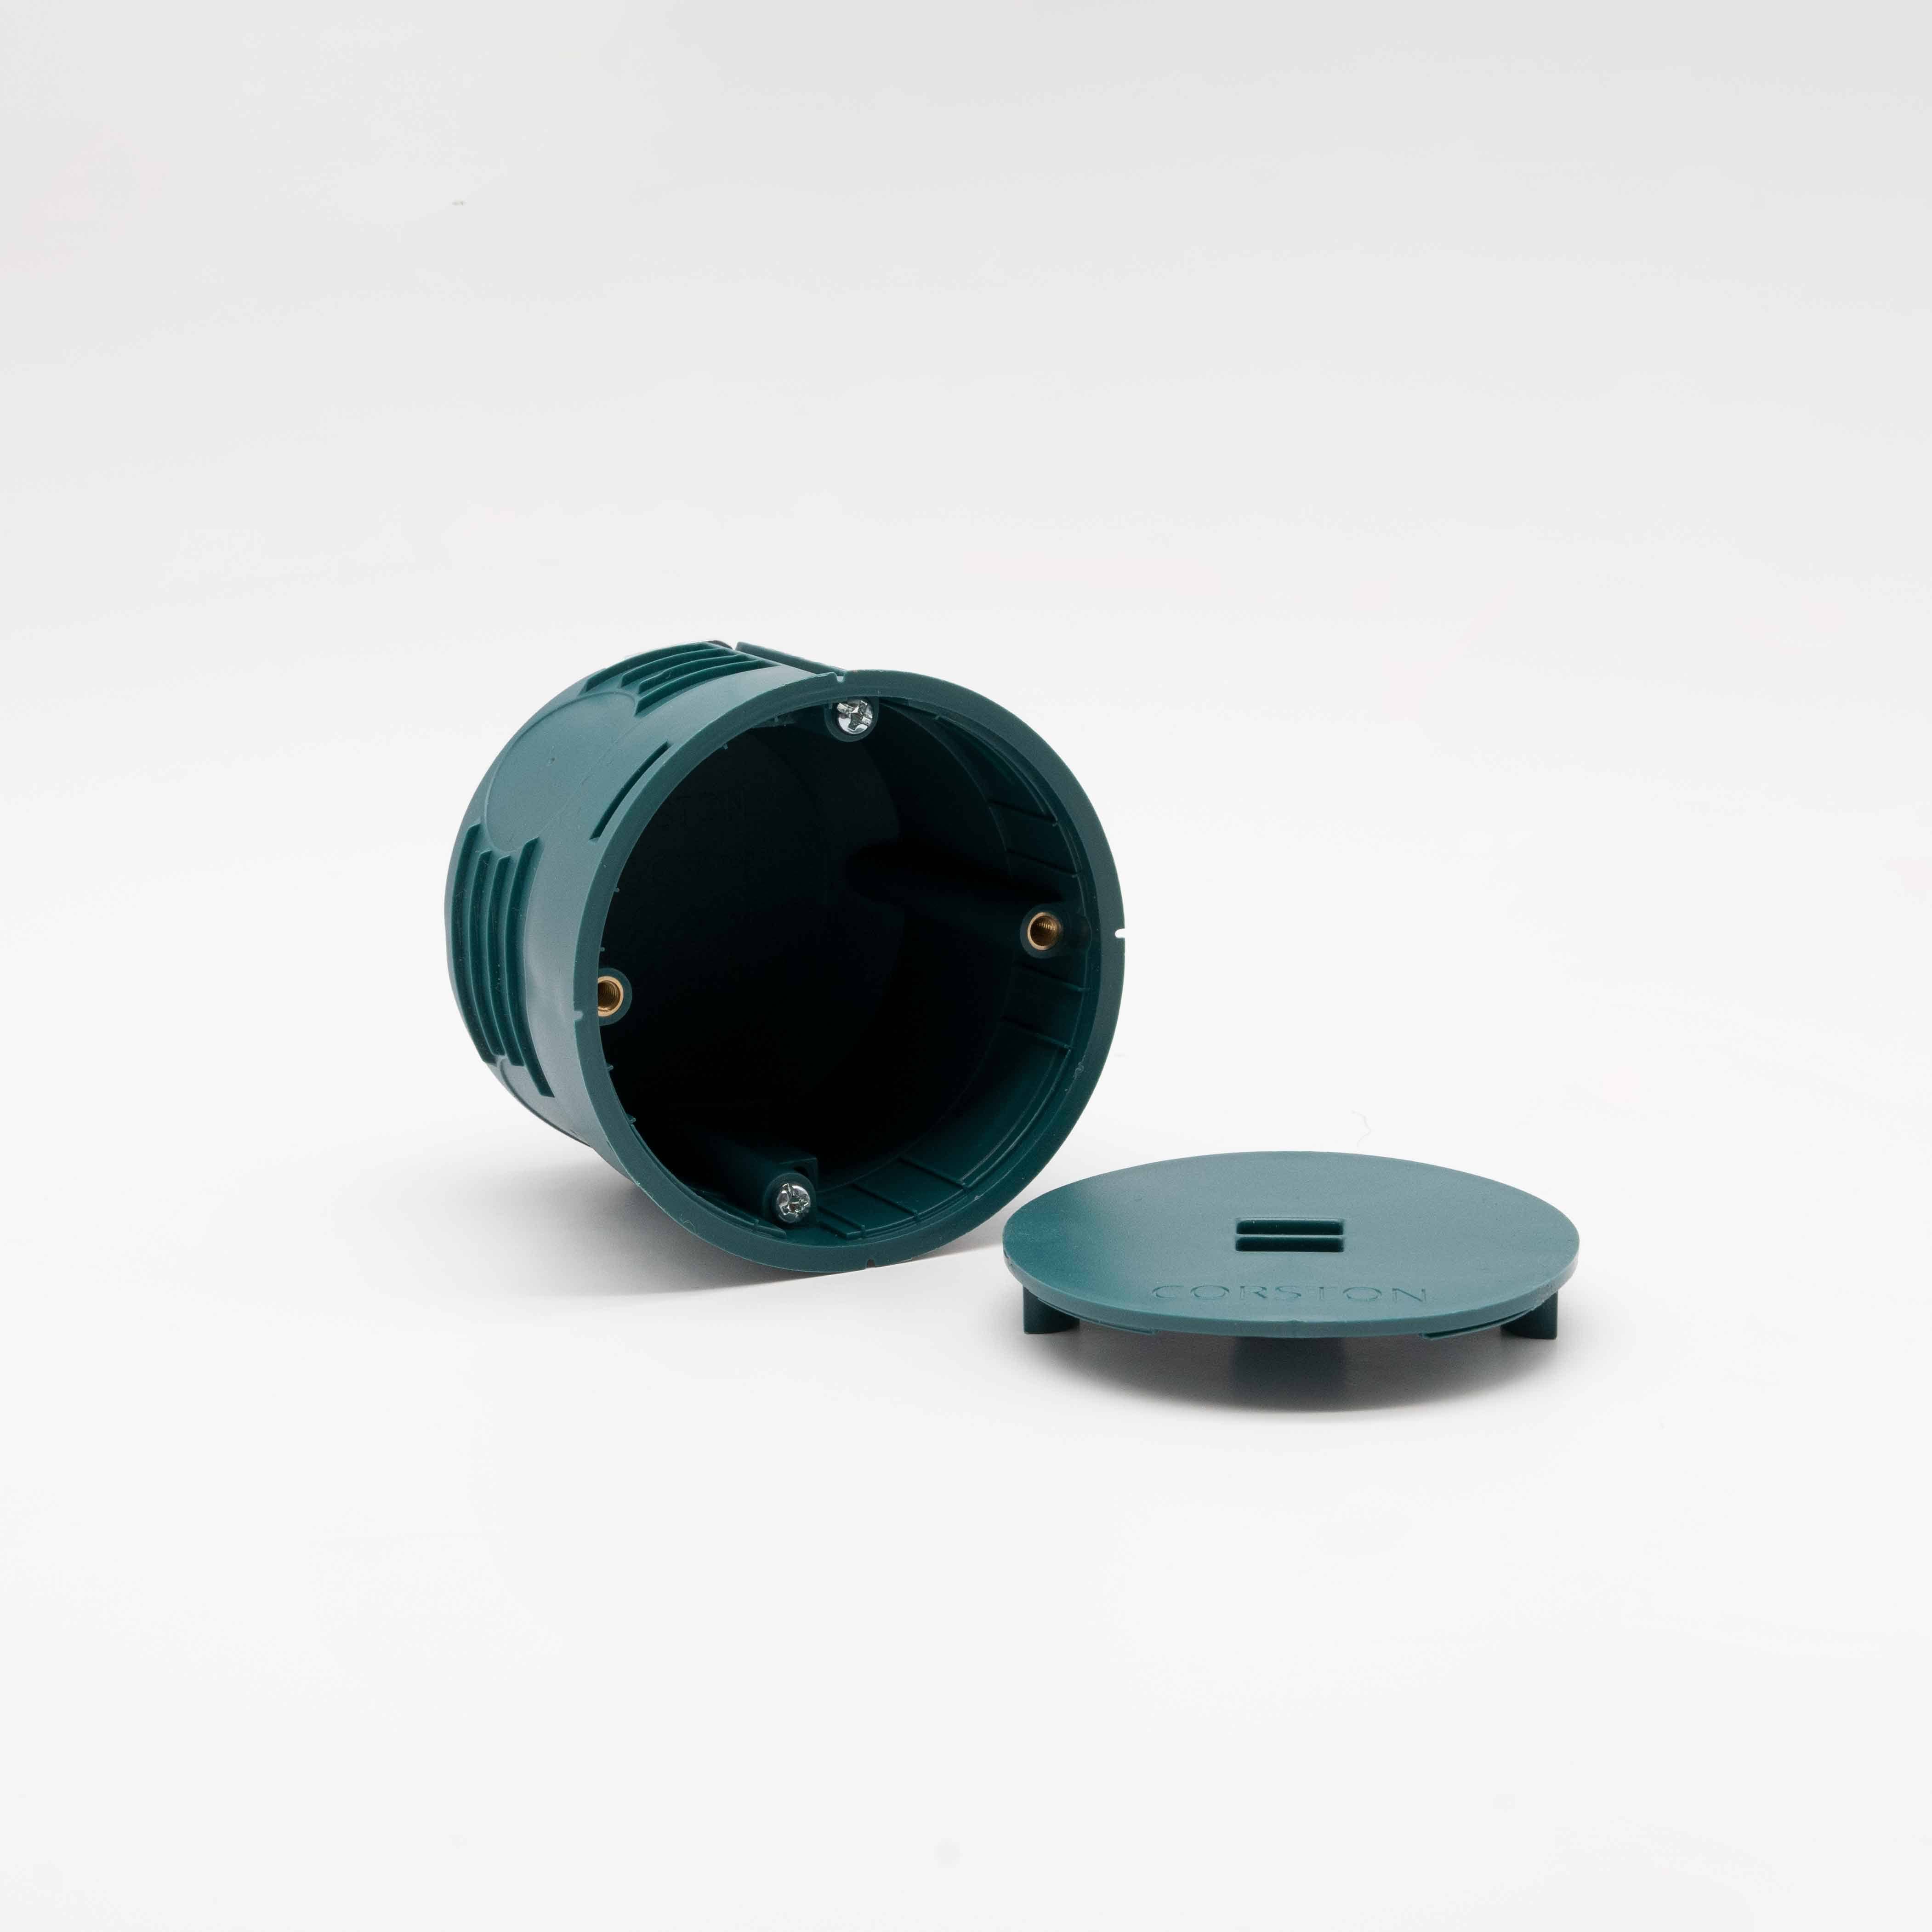 Corston Gerätedose – Kompaktes elektrisches Gehäuse für eine Steckdose